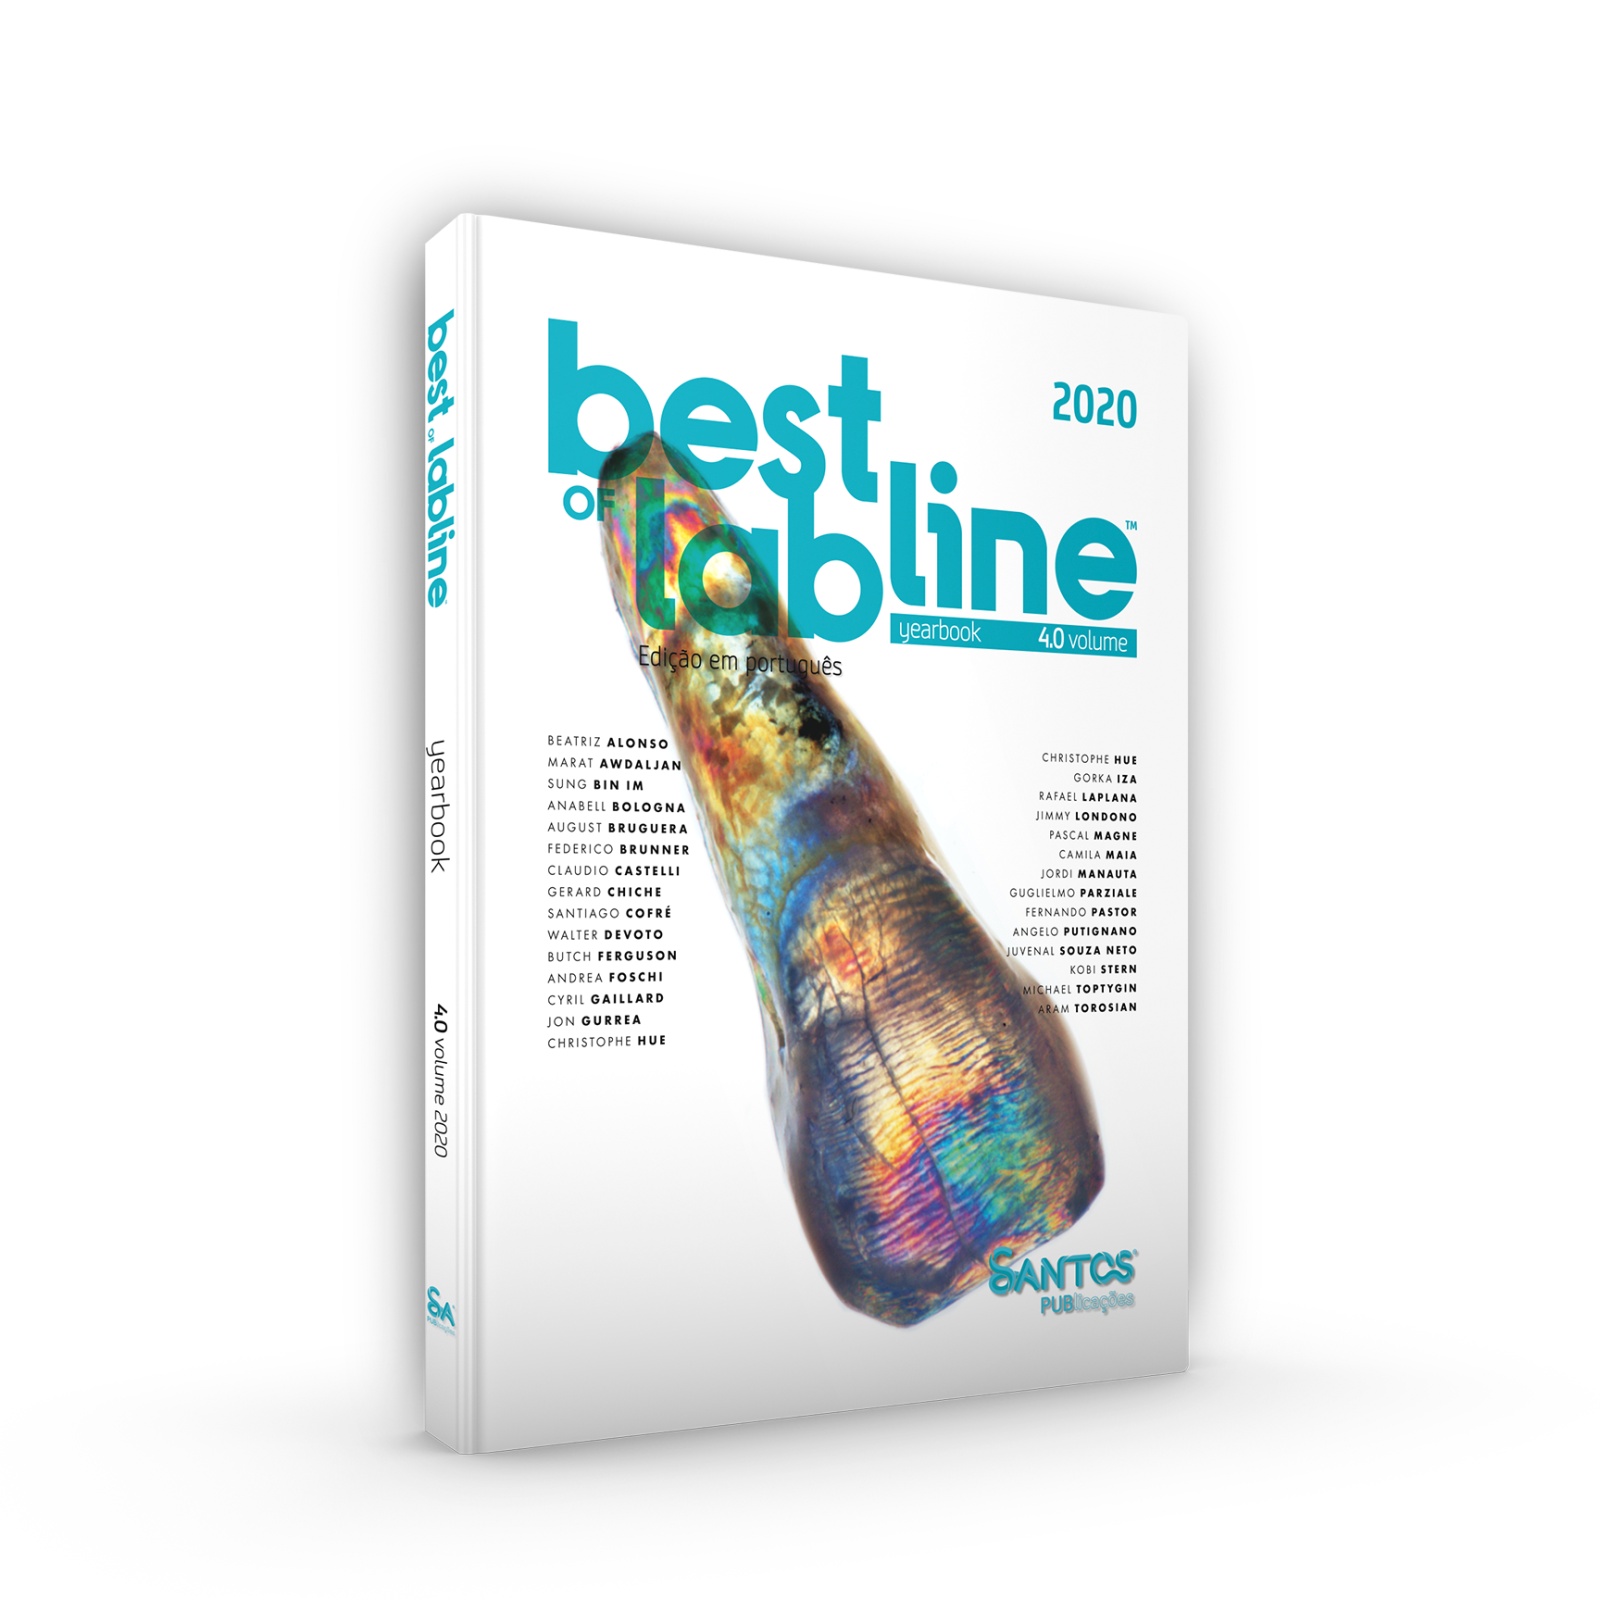 Best of Labline - Yearbook  4.0